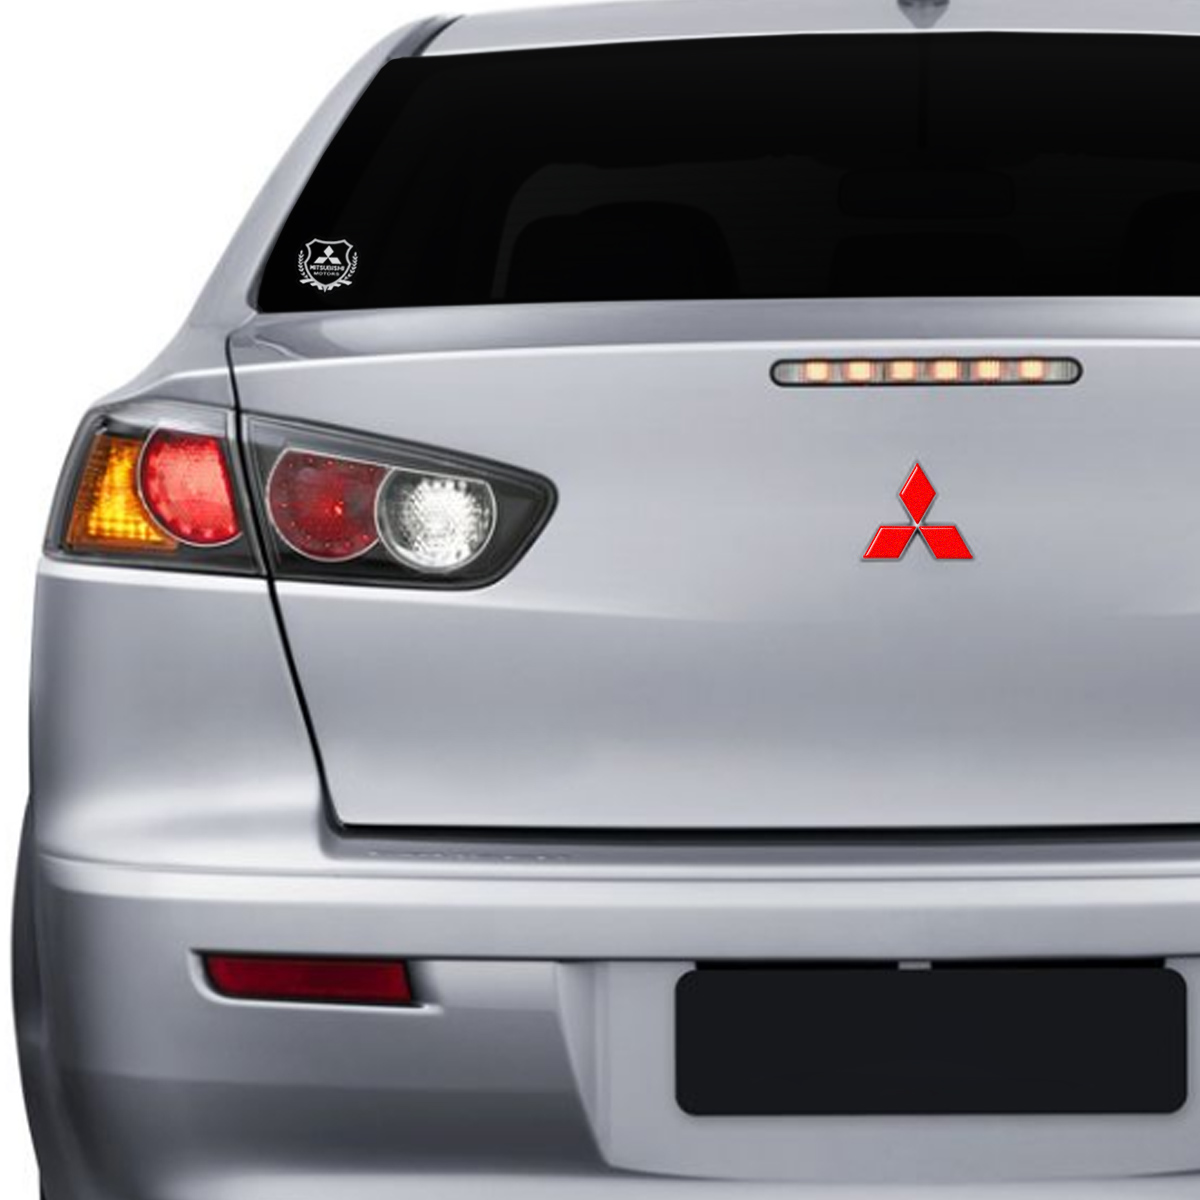 Emblemas Logo Lancer Mitsubishi Adesivo Resinado Refletivo